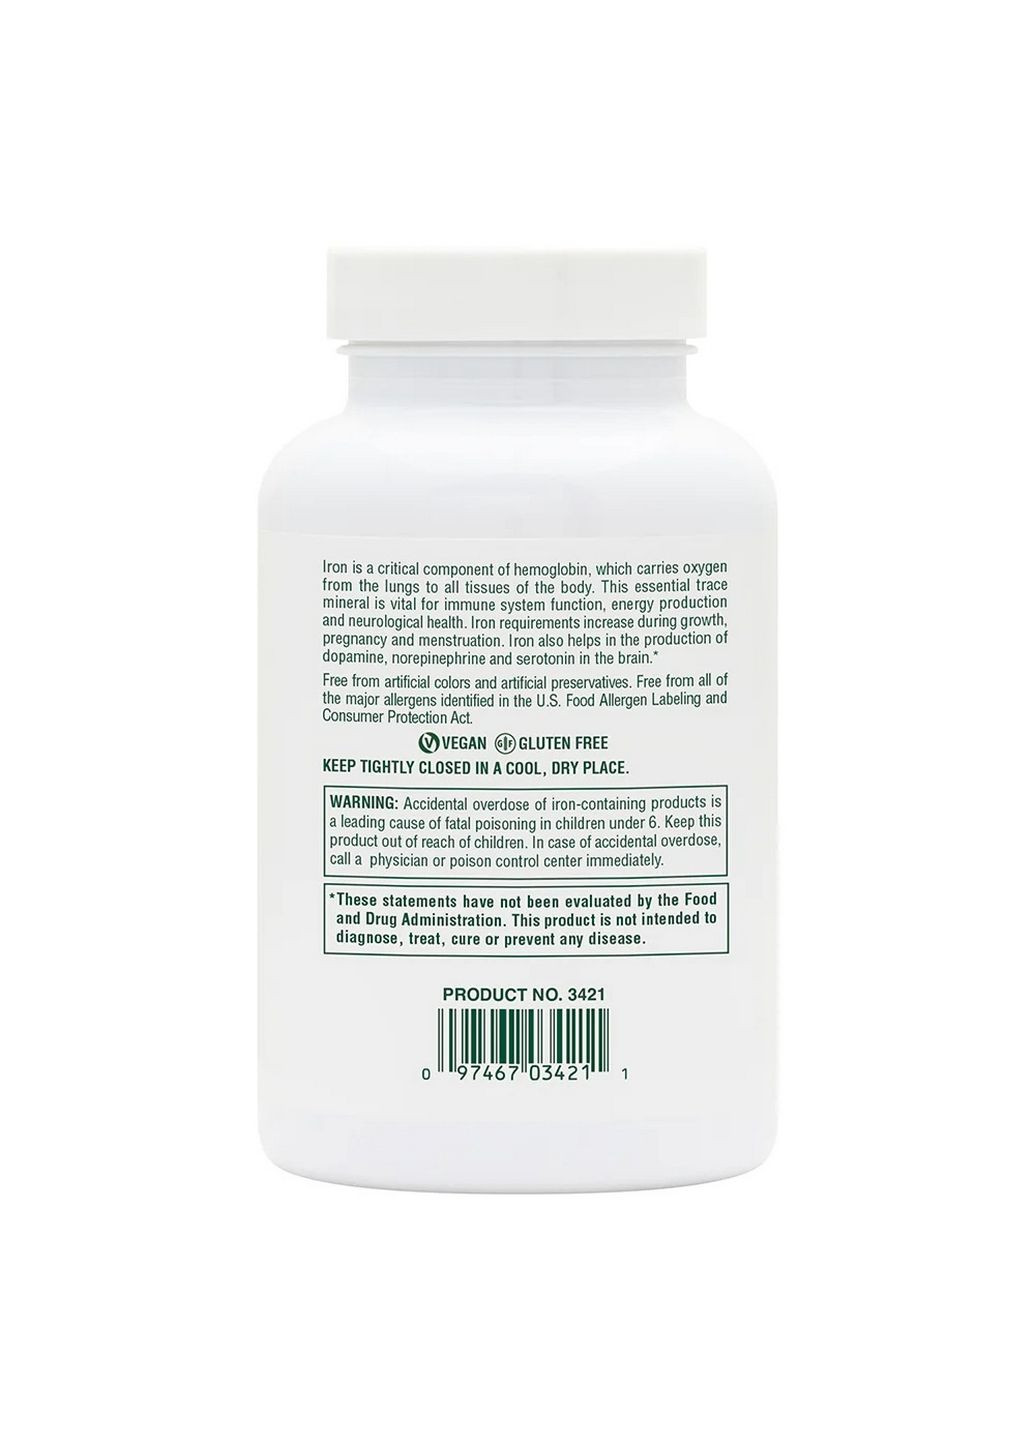 Вітаміни та мінерали Chewable Iron, 90 таблеток Natures Plus (293419941)